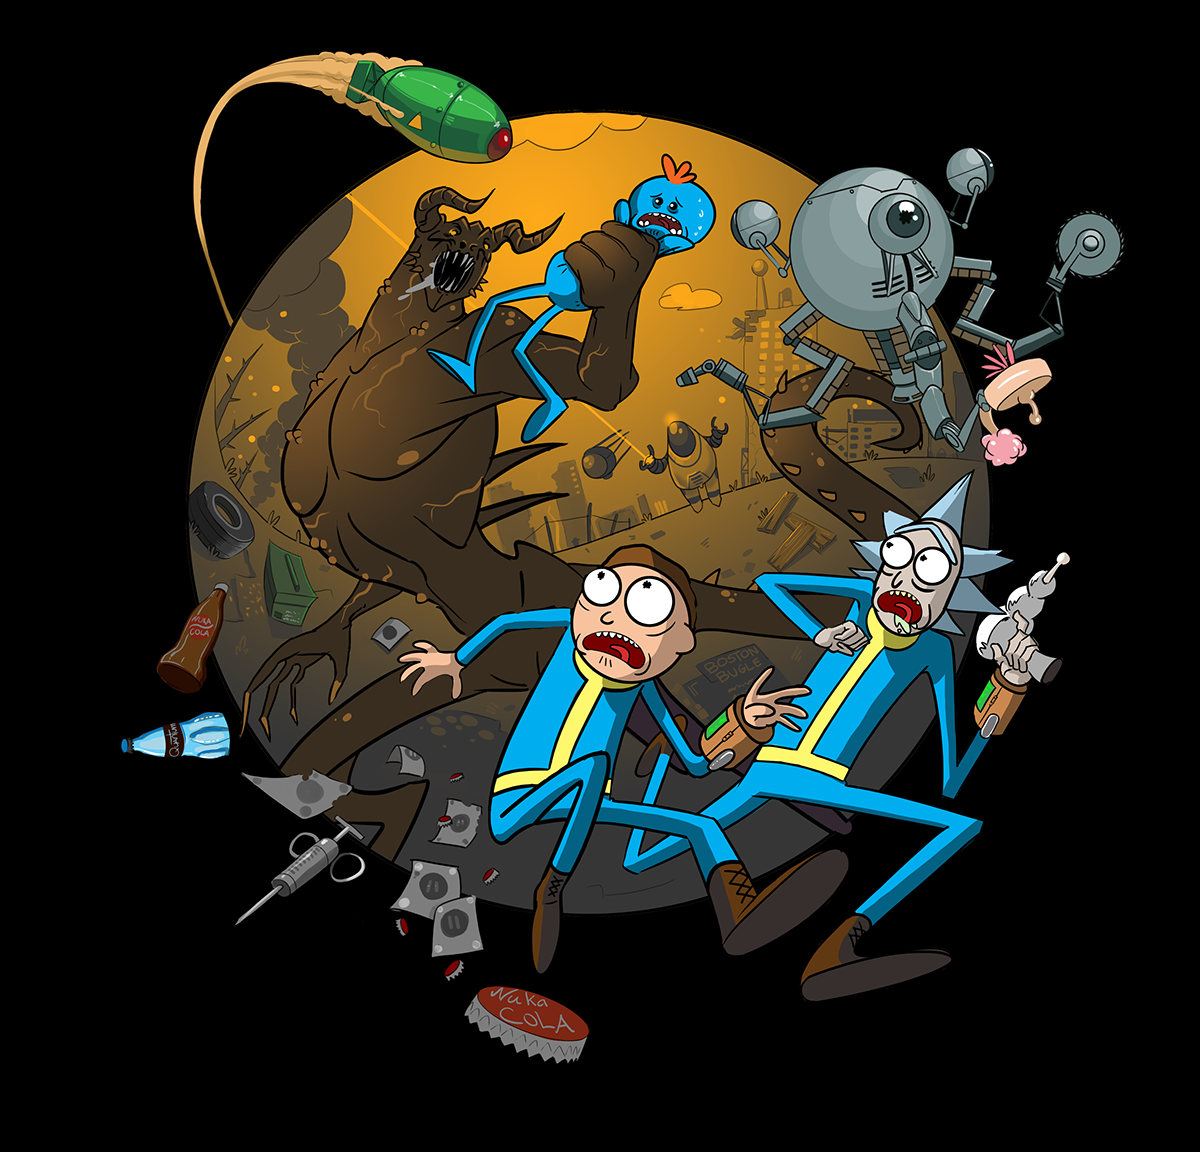 Rick and Morty and Fallout by Philip Bawasanta